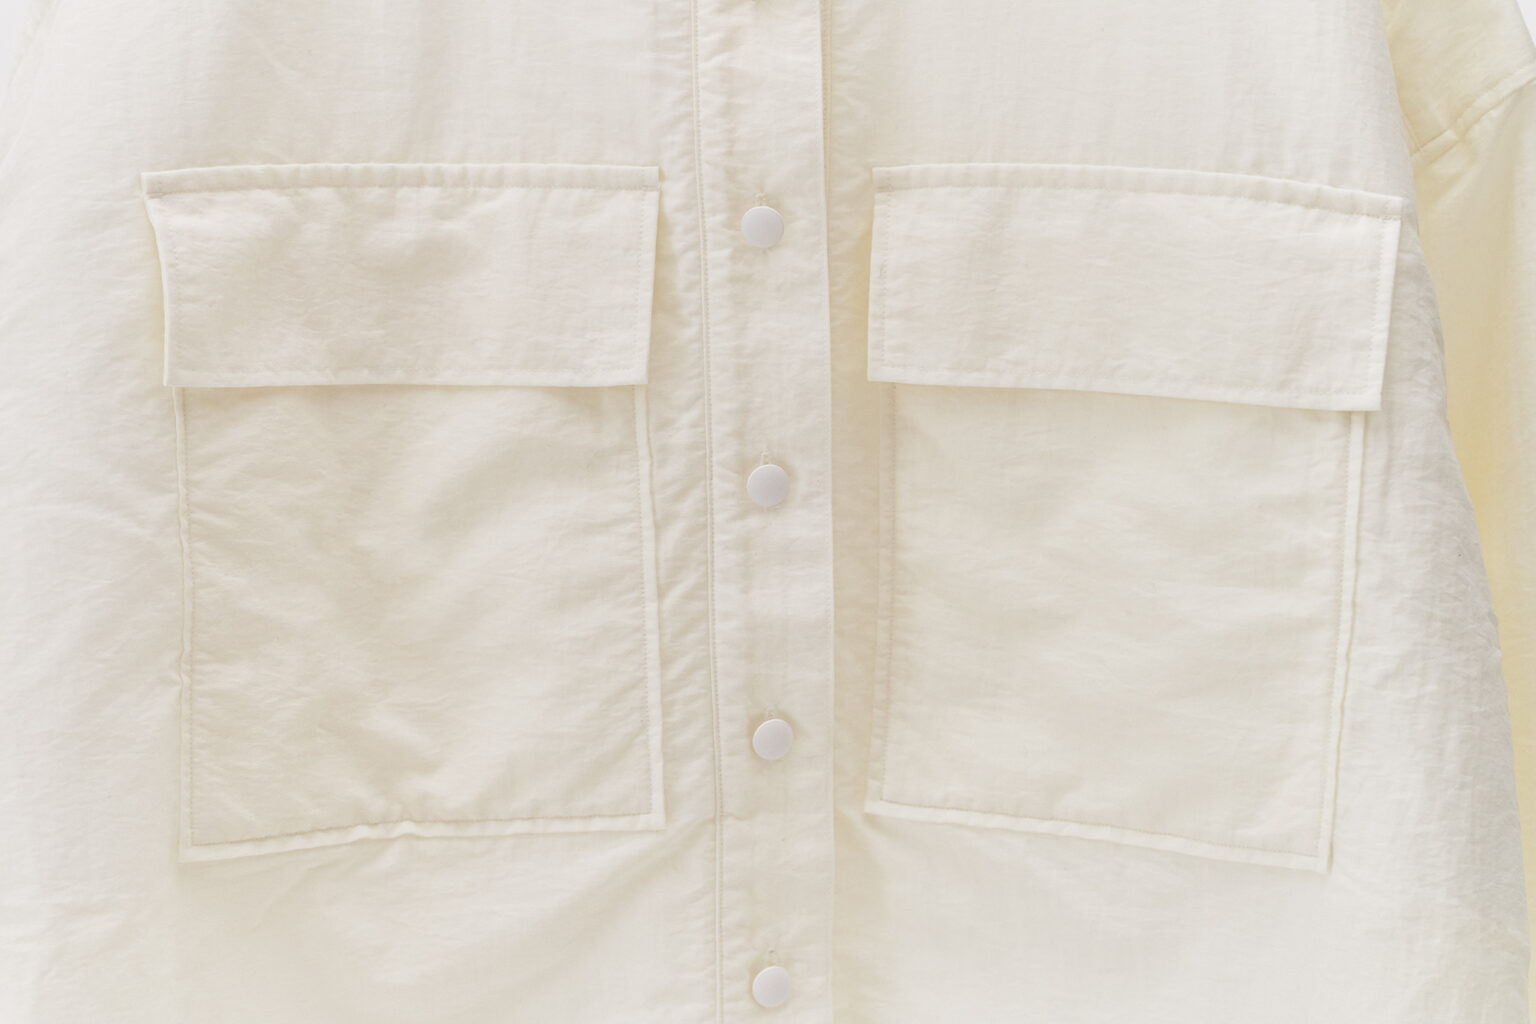 大きなポケットが胸のシルエットを隠してくれる。ボタンは間隔を狭めに配置し、安心感のあるデザインに。